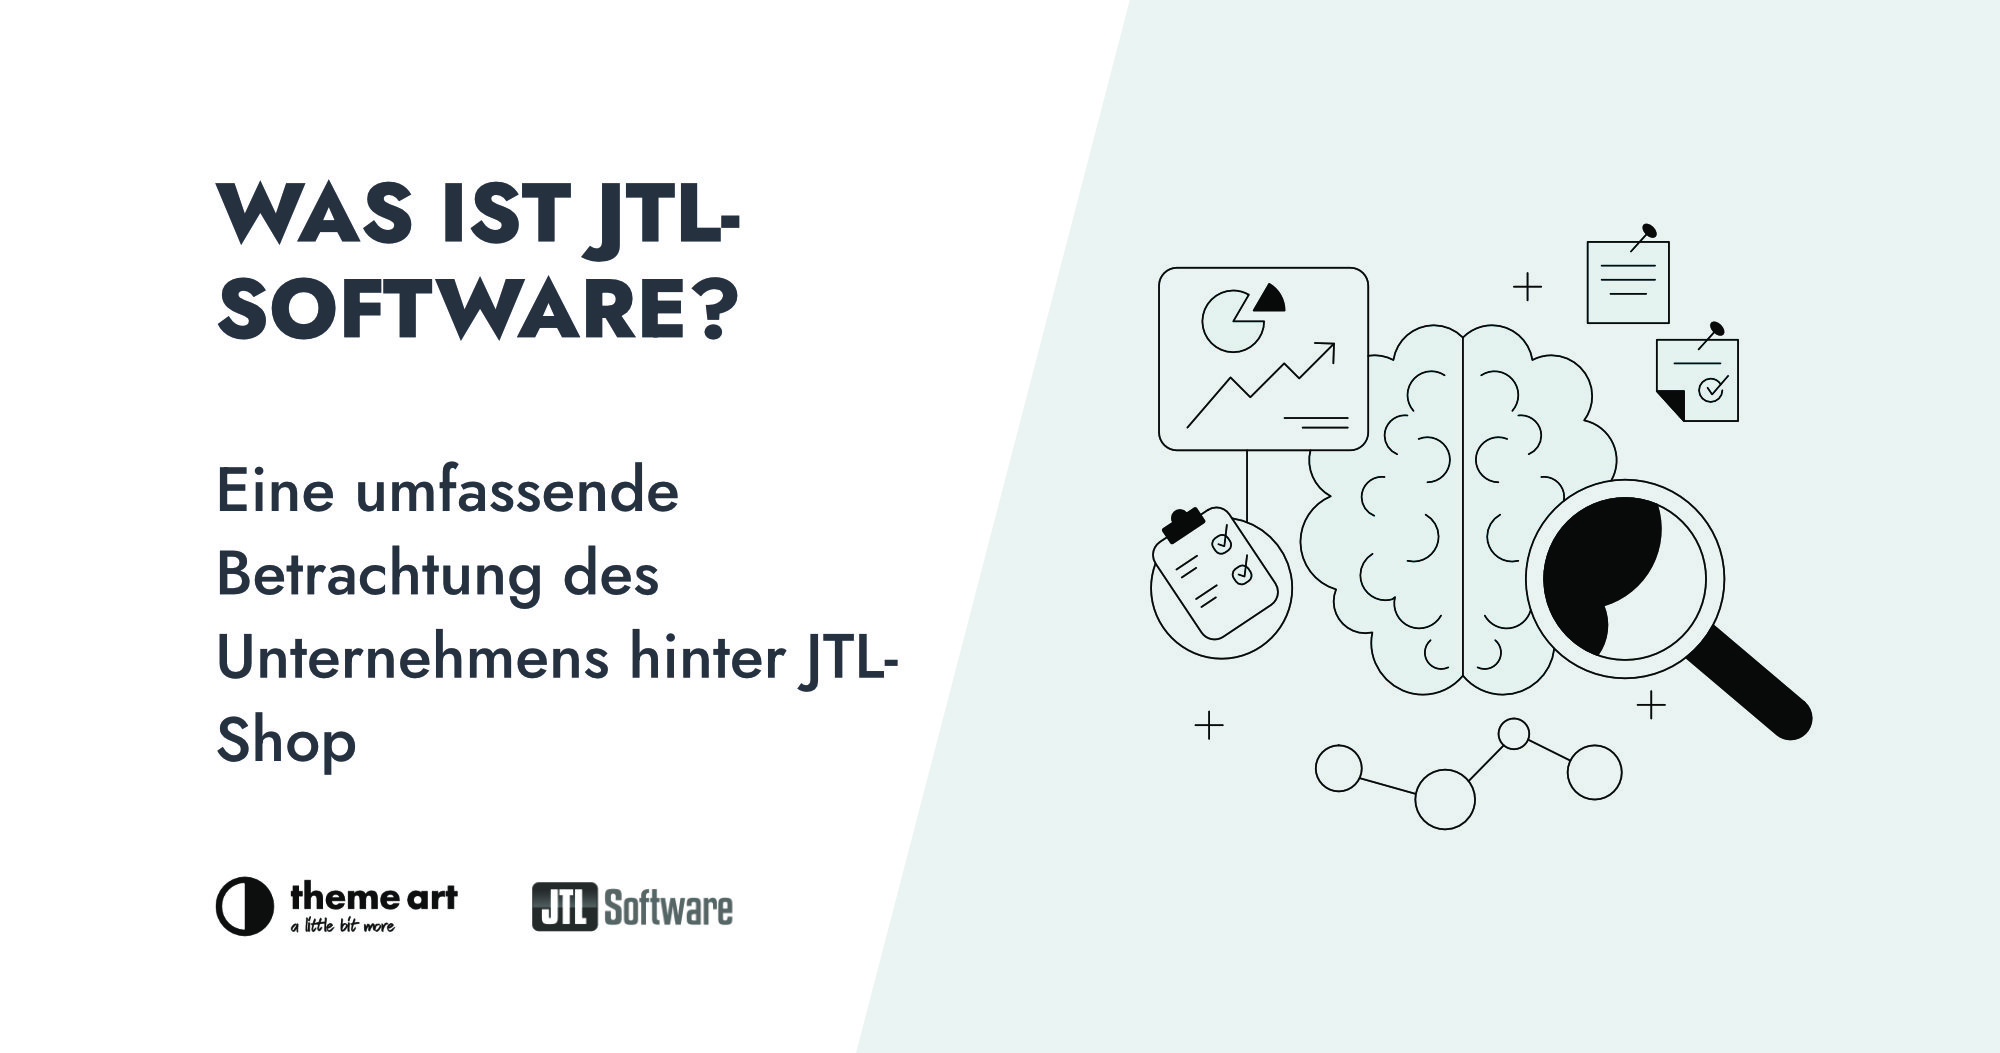 Was ist JTL-Software?